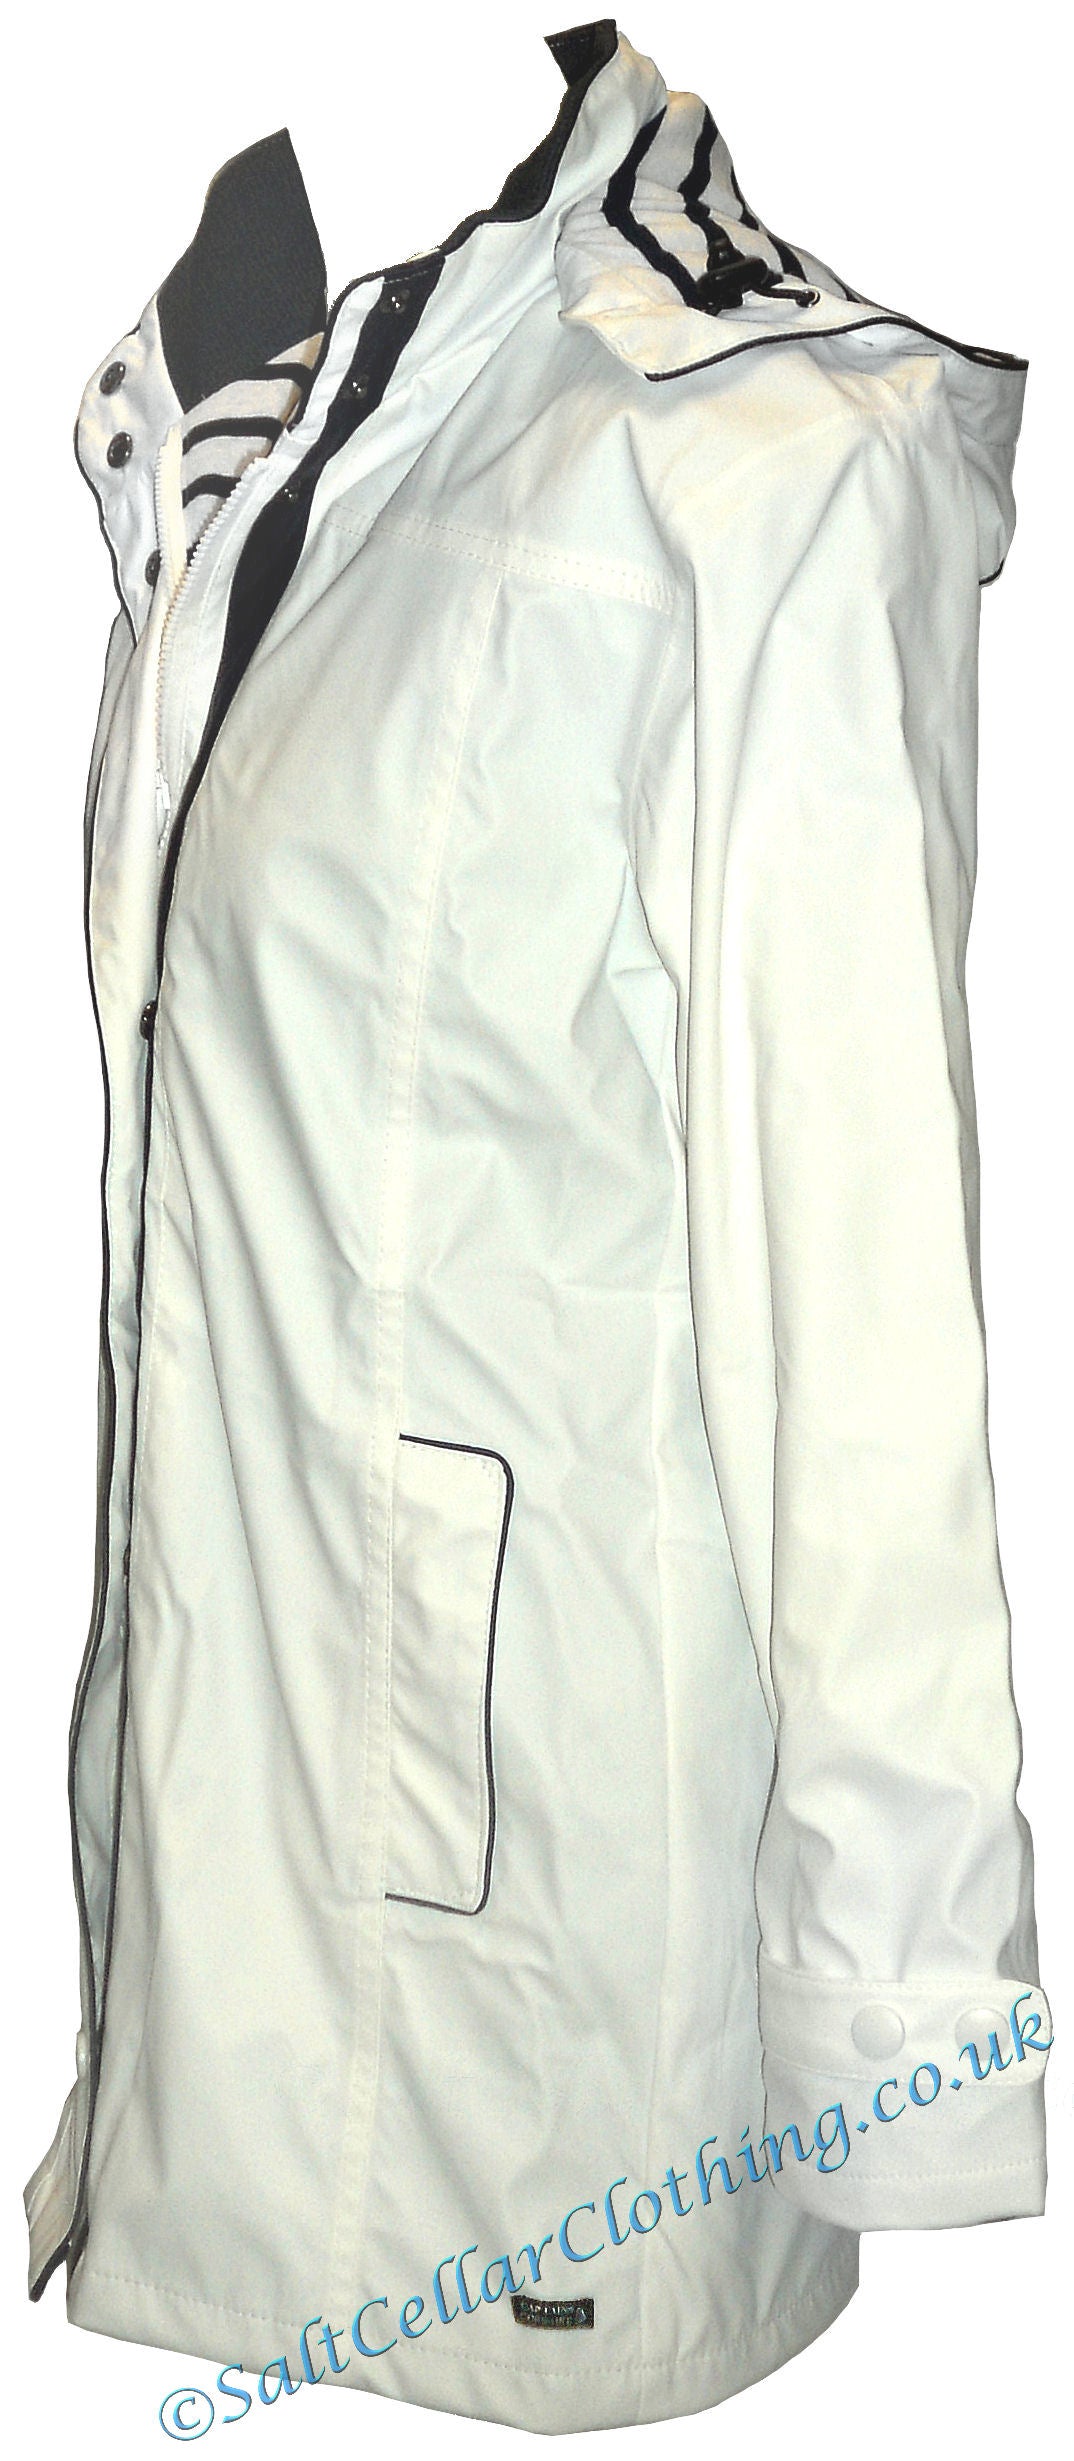 Captain Corsaire women's Regate Ete white waterproof rain jacket.